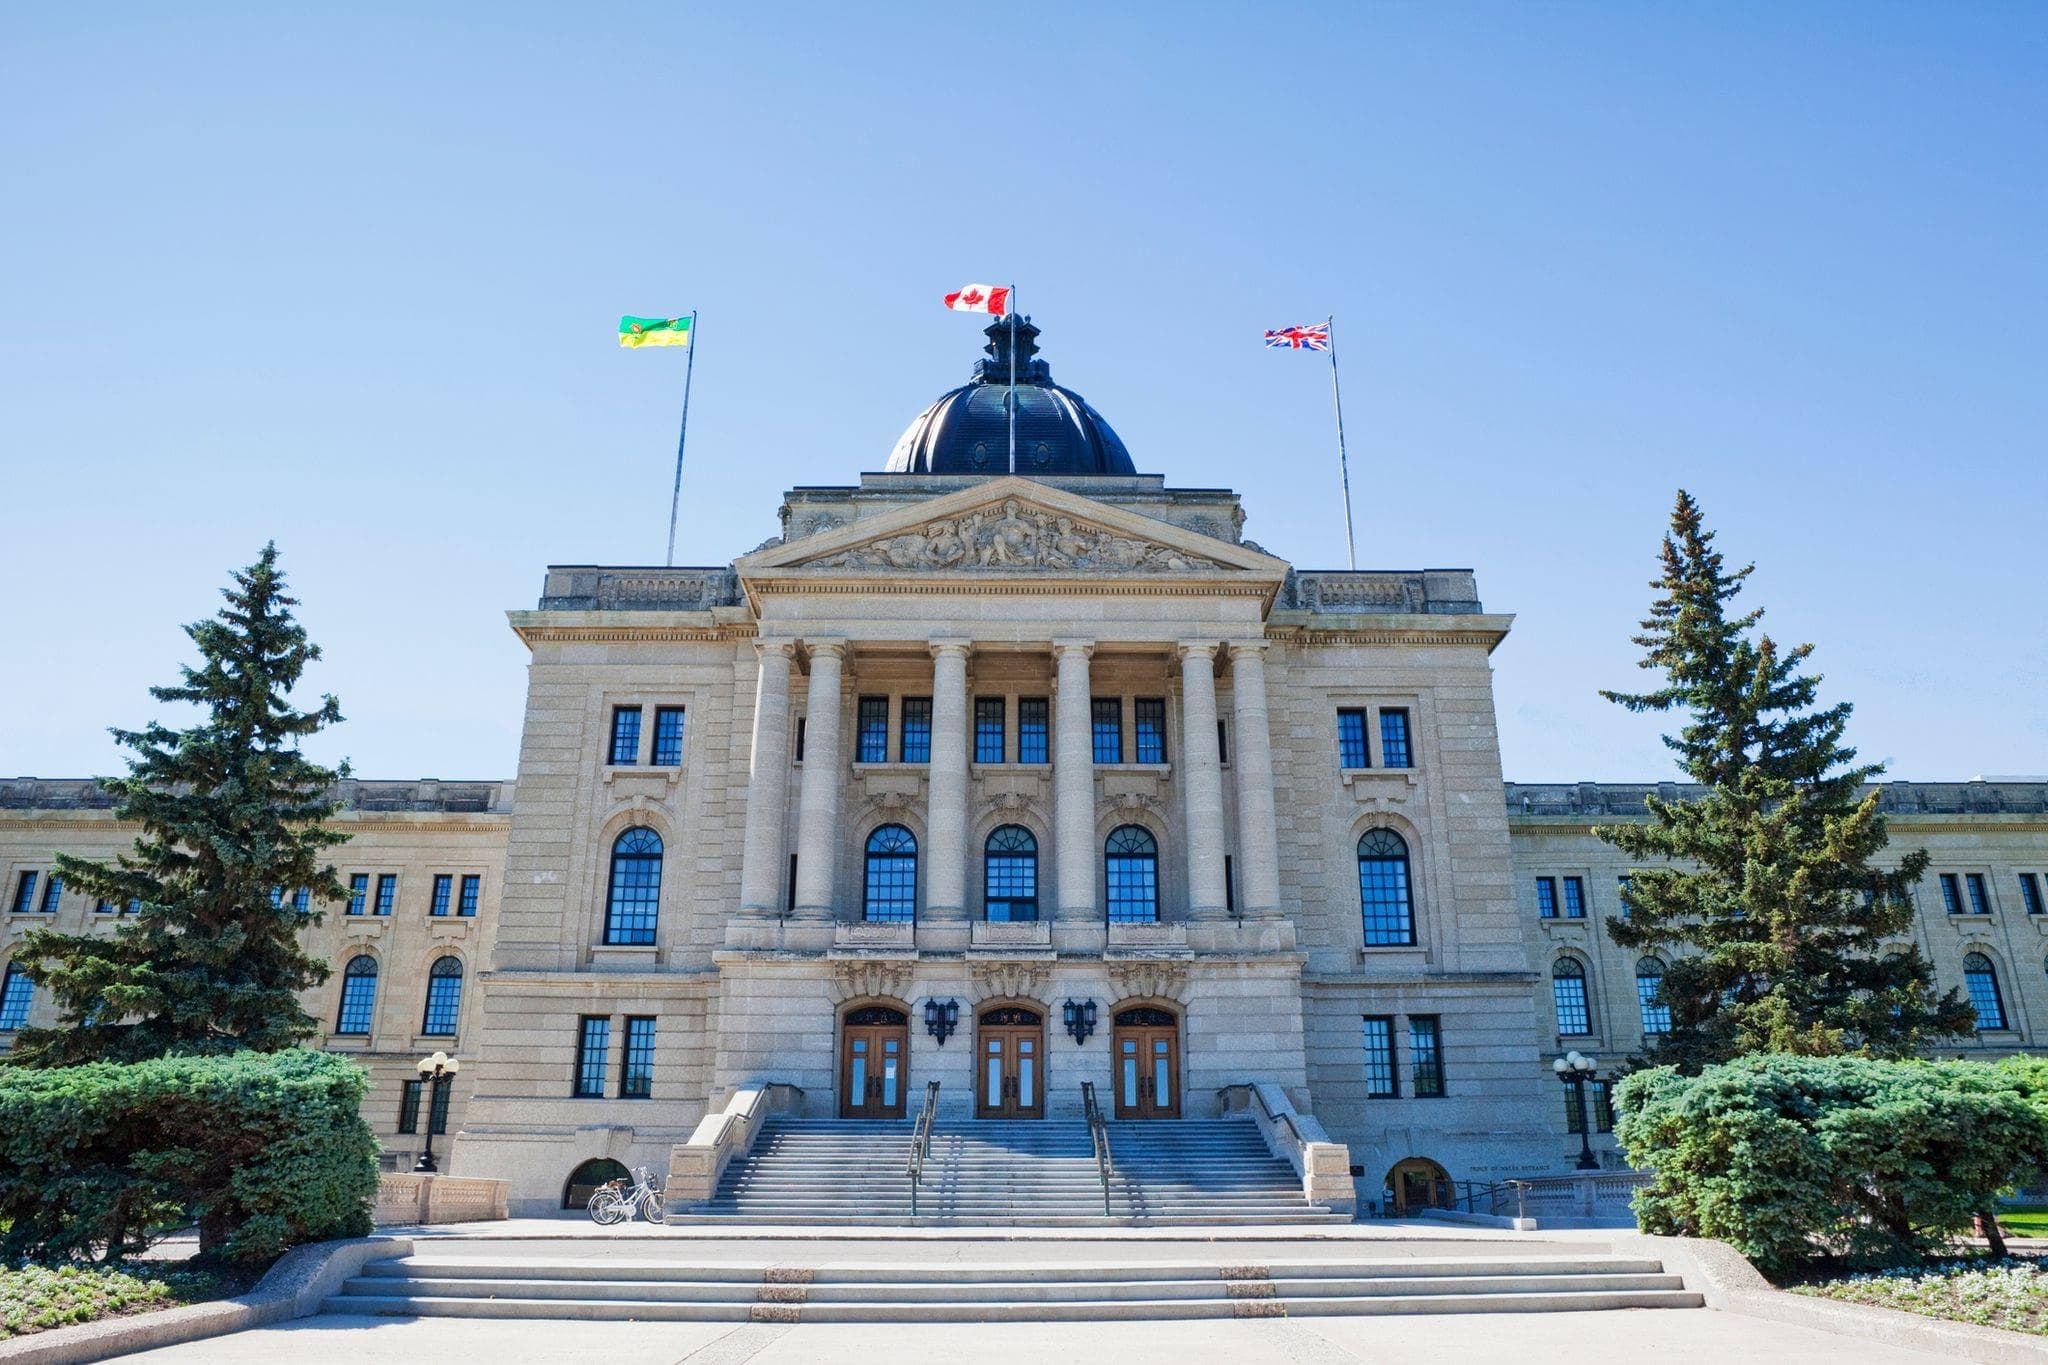 the legislative building in Regina, Saskatchewan